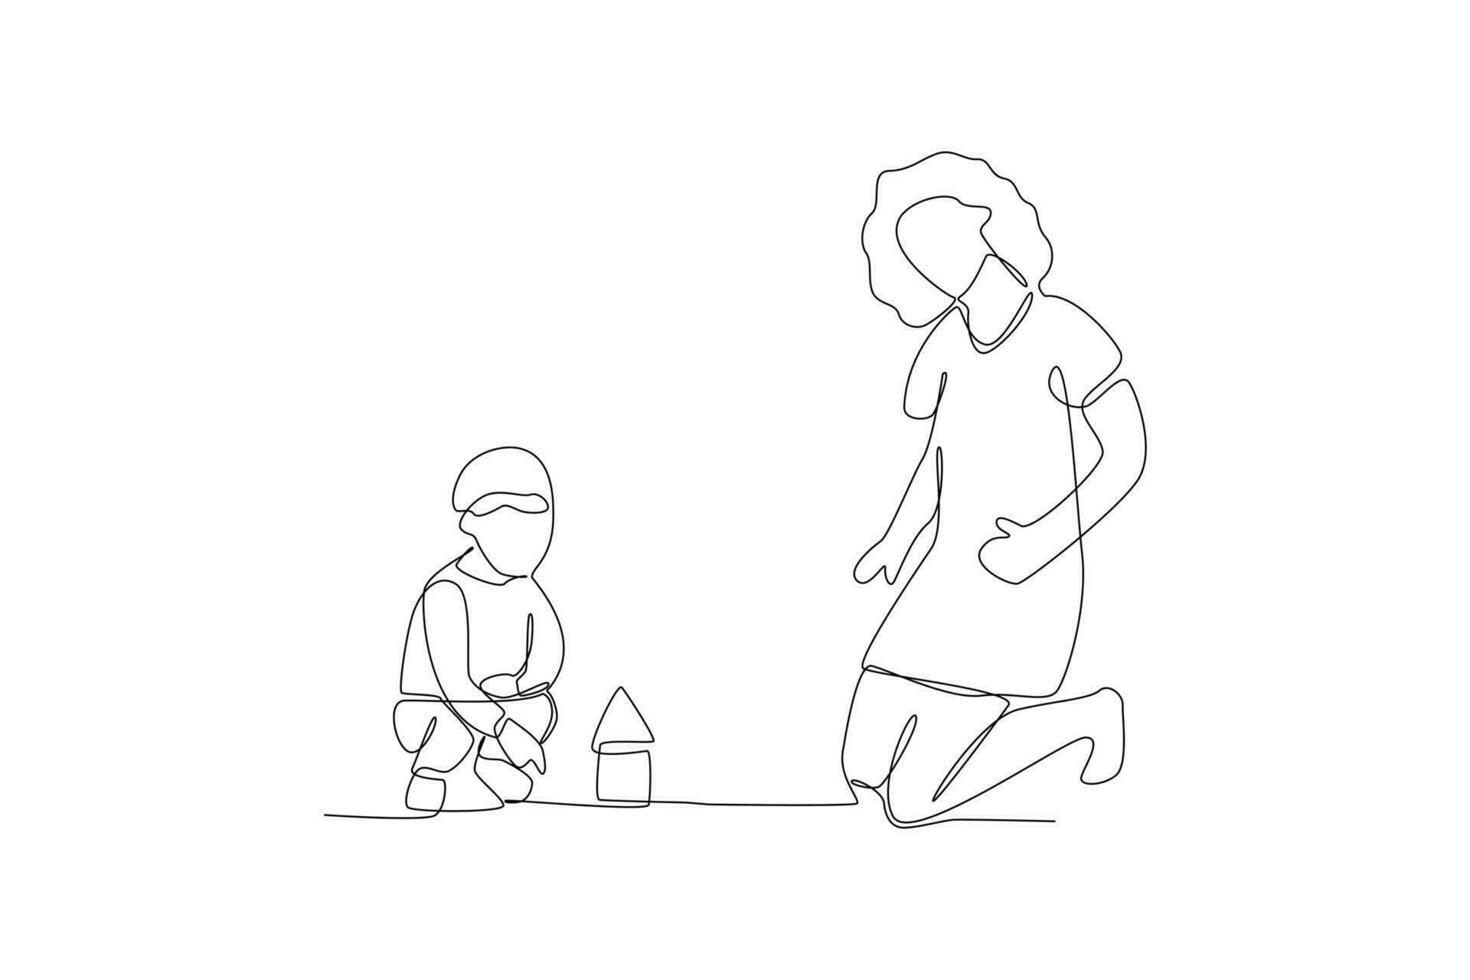 uno continuo linea disegno di bambini, genitori e medico. genitorialità nel assistenza sanitaria concetto. scarabocchio vettore illustrazione nel semplice lineare stile.